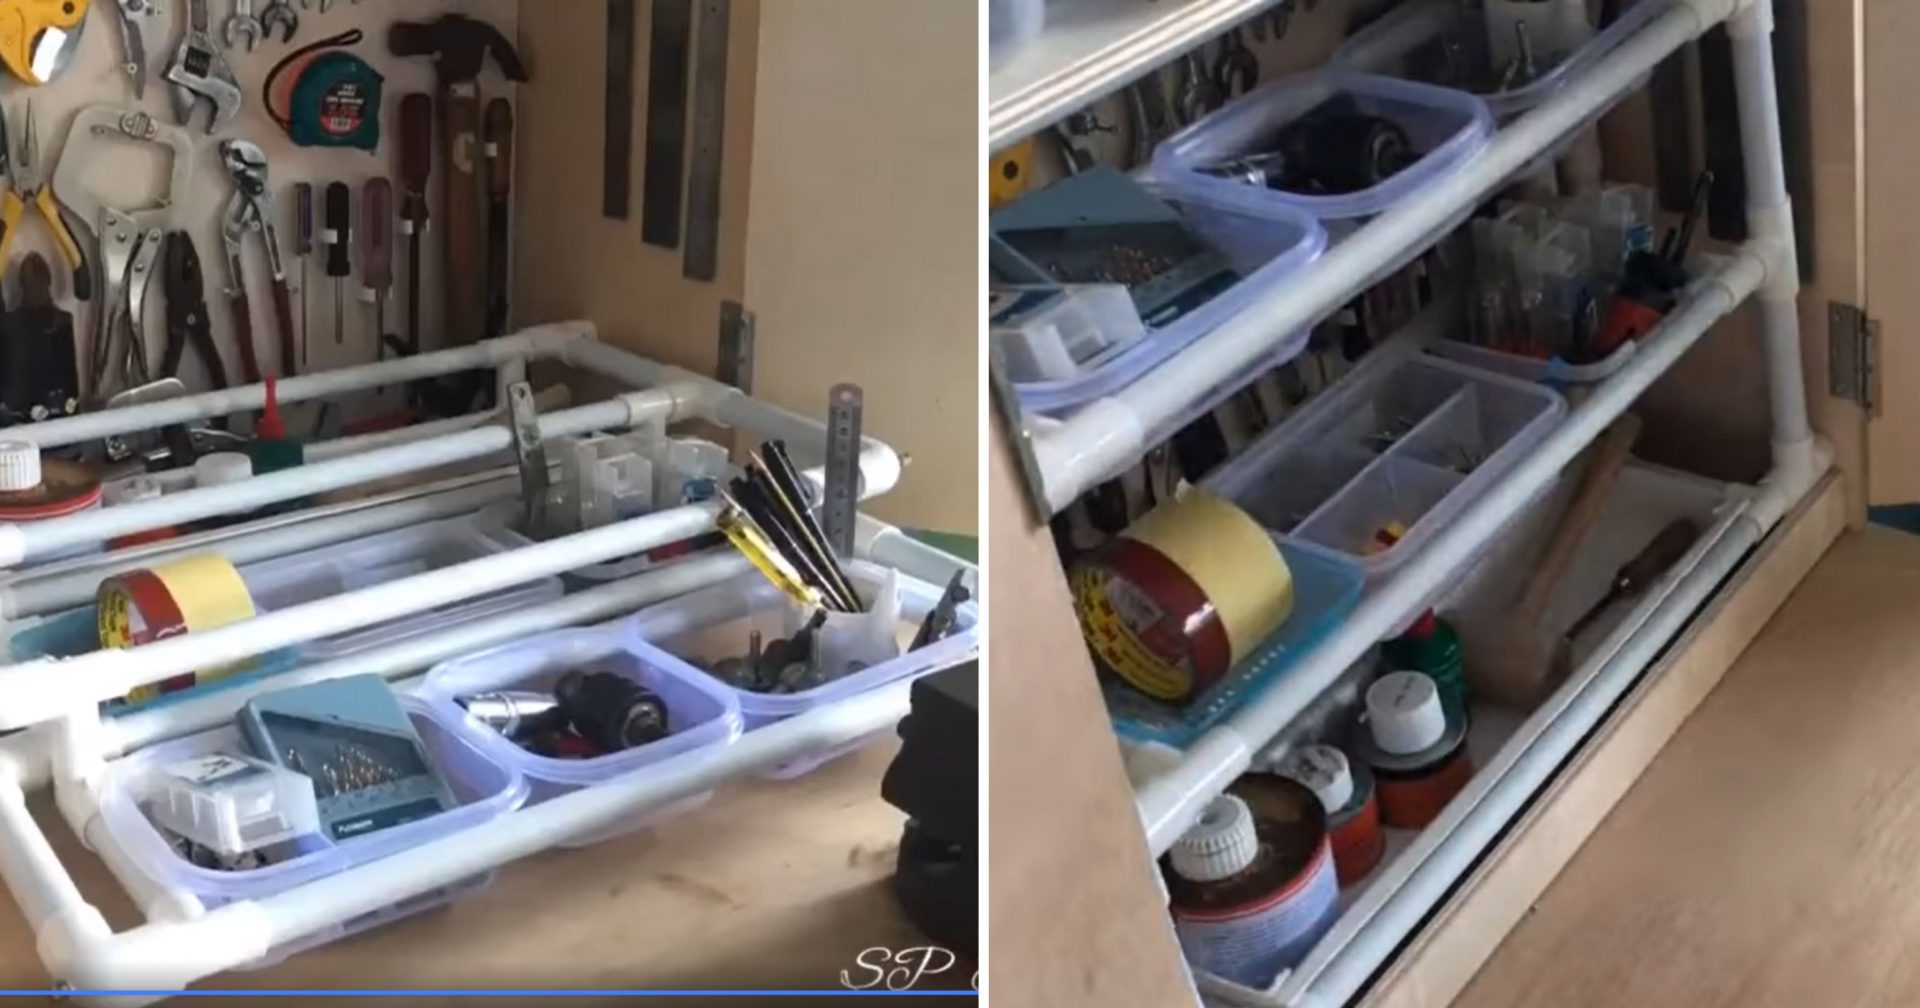 (VIDEO) D.I.Y &#8220;Tools Box&#8221; Dari PVC Jimat Ruang Dan Mudah Untuk Ambil Barang